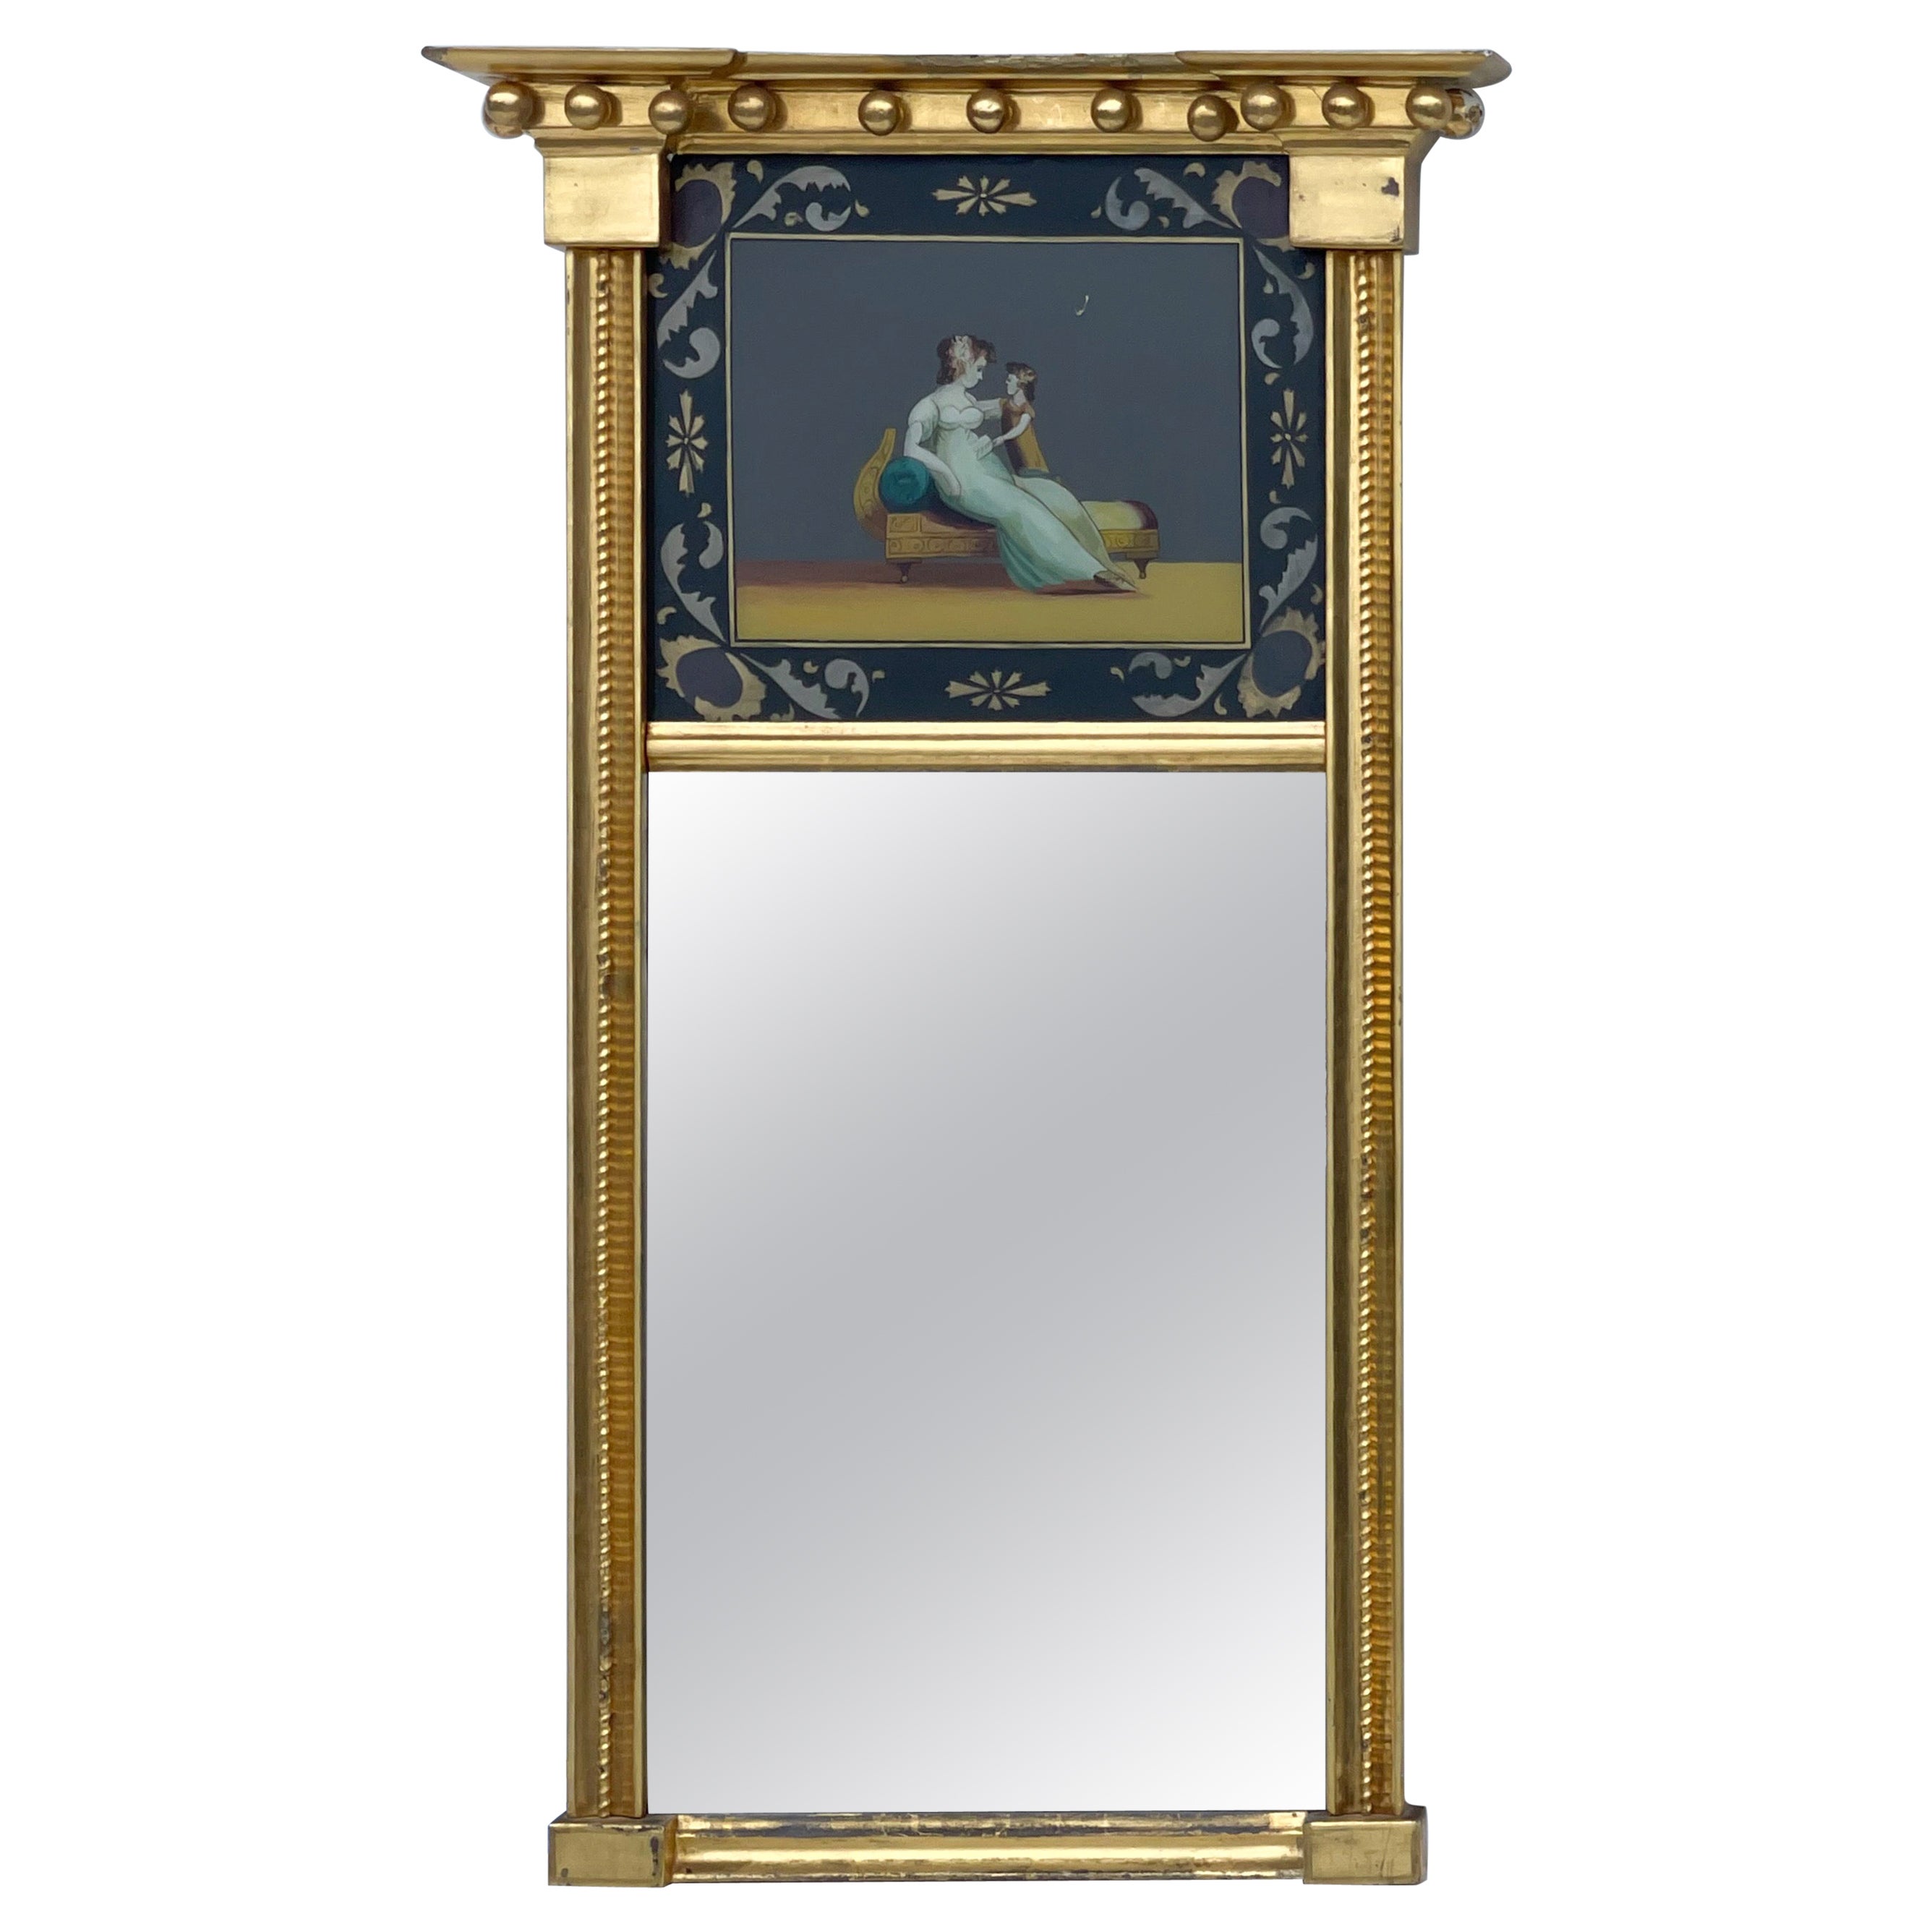 Miroir Trumeau en émail doré de style fédéral du 19ème siècle avec mère et enfant